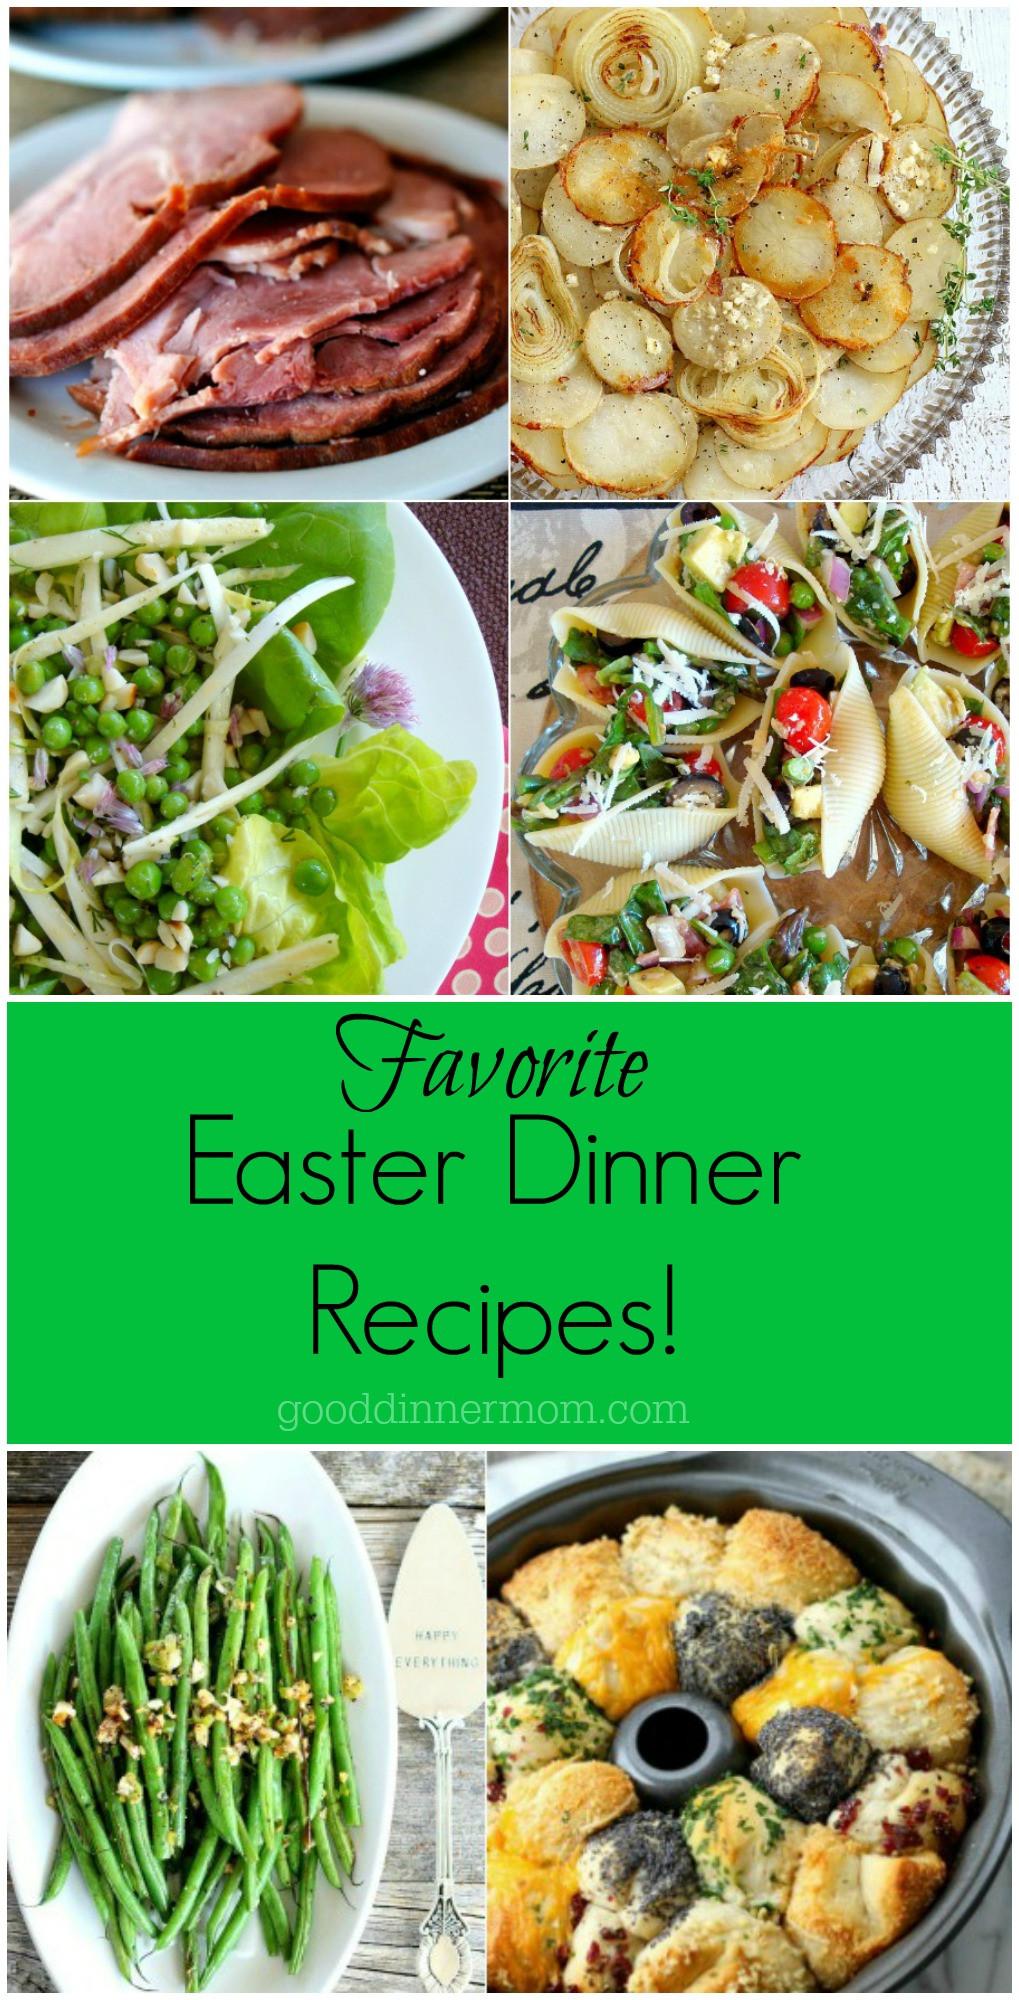 Good Easter Dinner Ideas
 Easter Dinner Recipes Good Dinner Mom